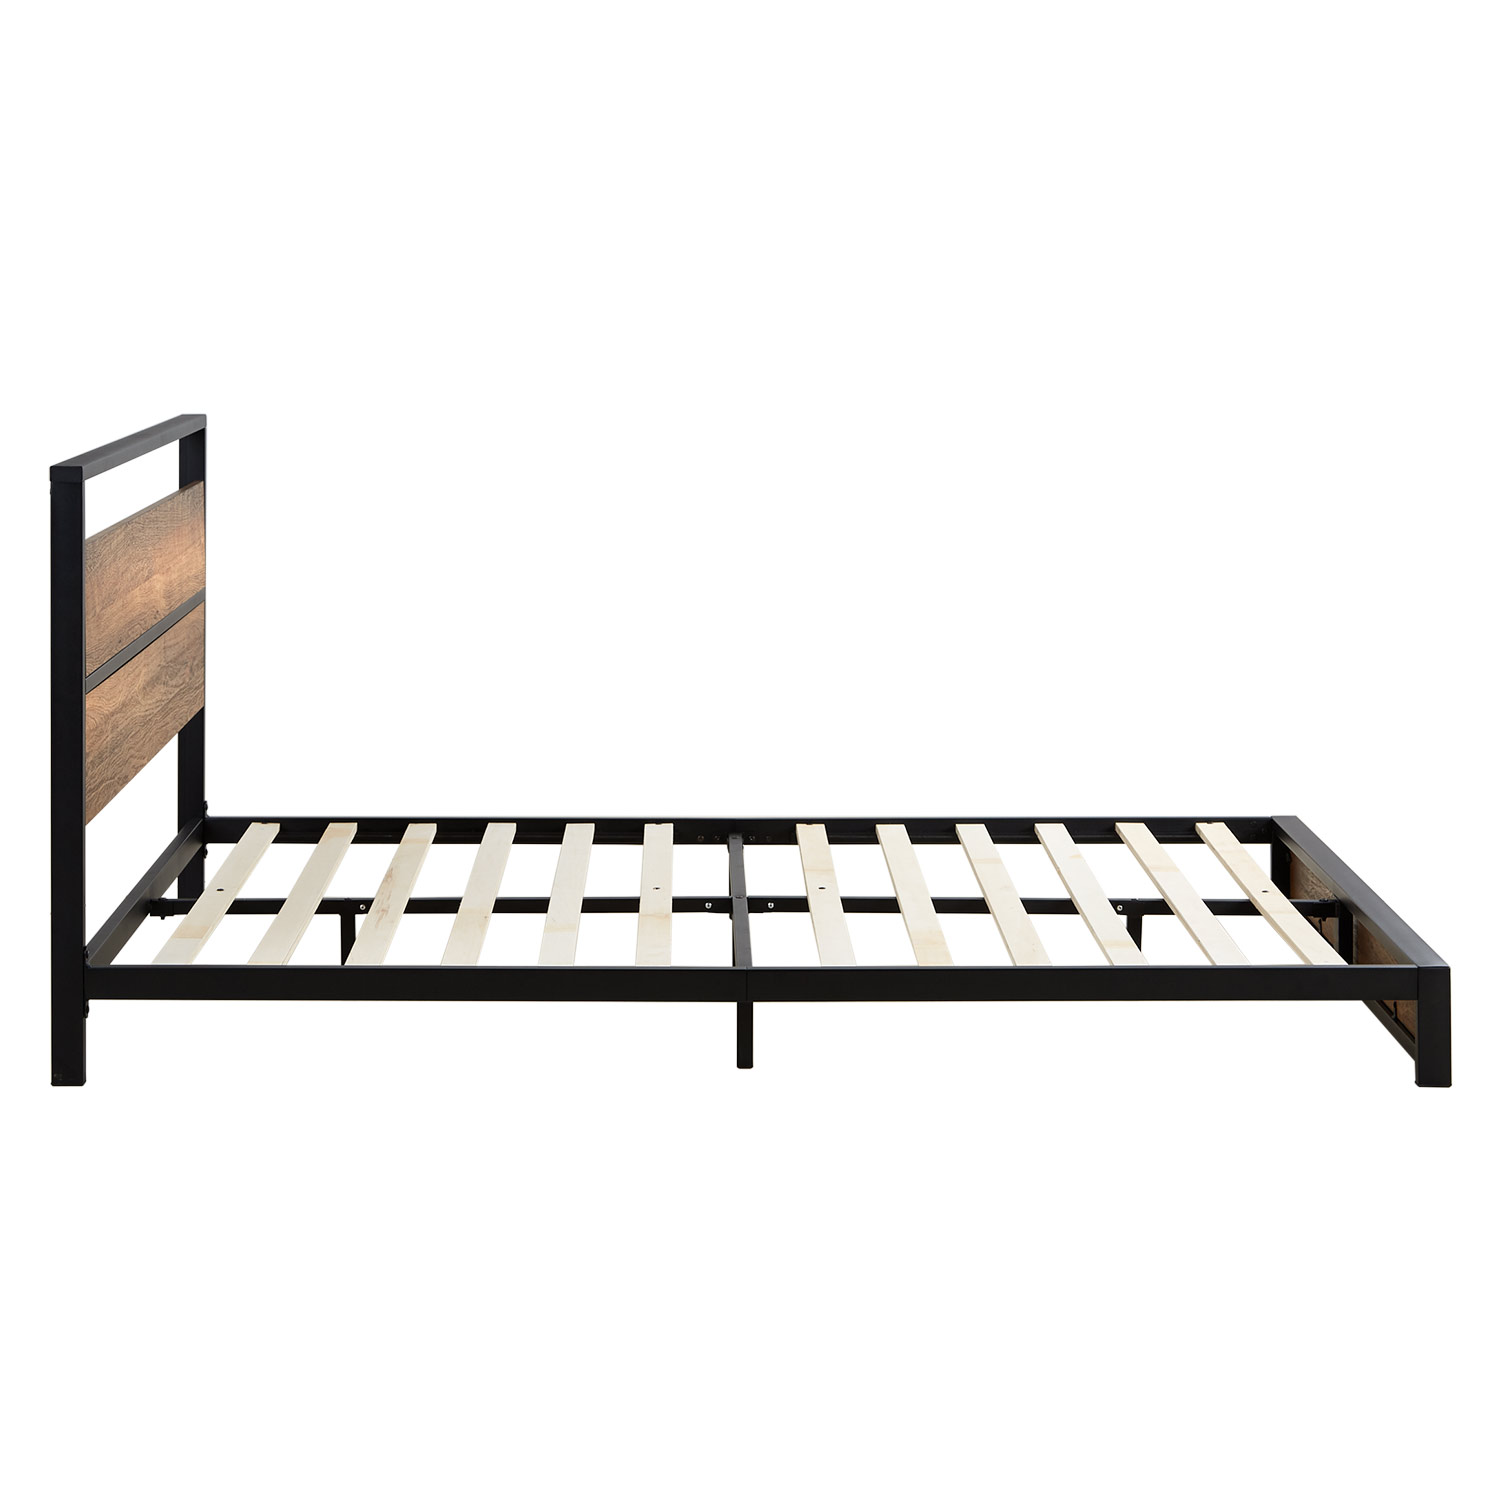 Solid Metal Bed 140x200 cm Slatts Double Bed Black Futon Bed Wood Brown Platform Bed Frame Guest Bed 